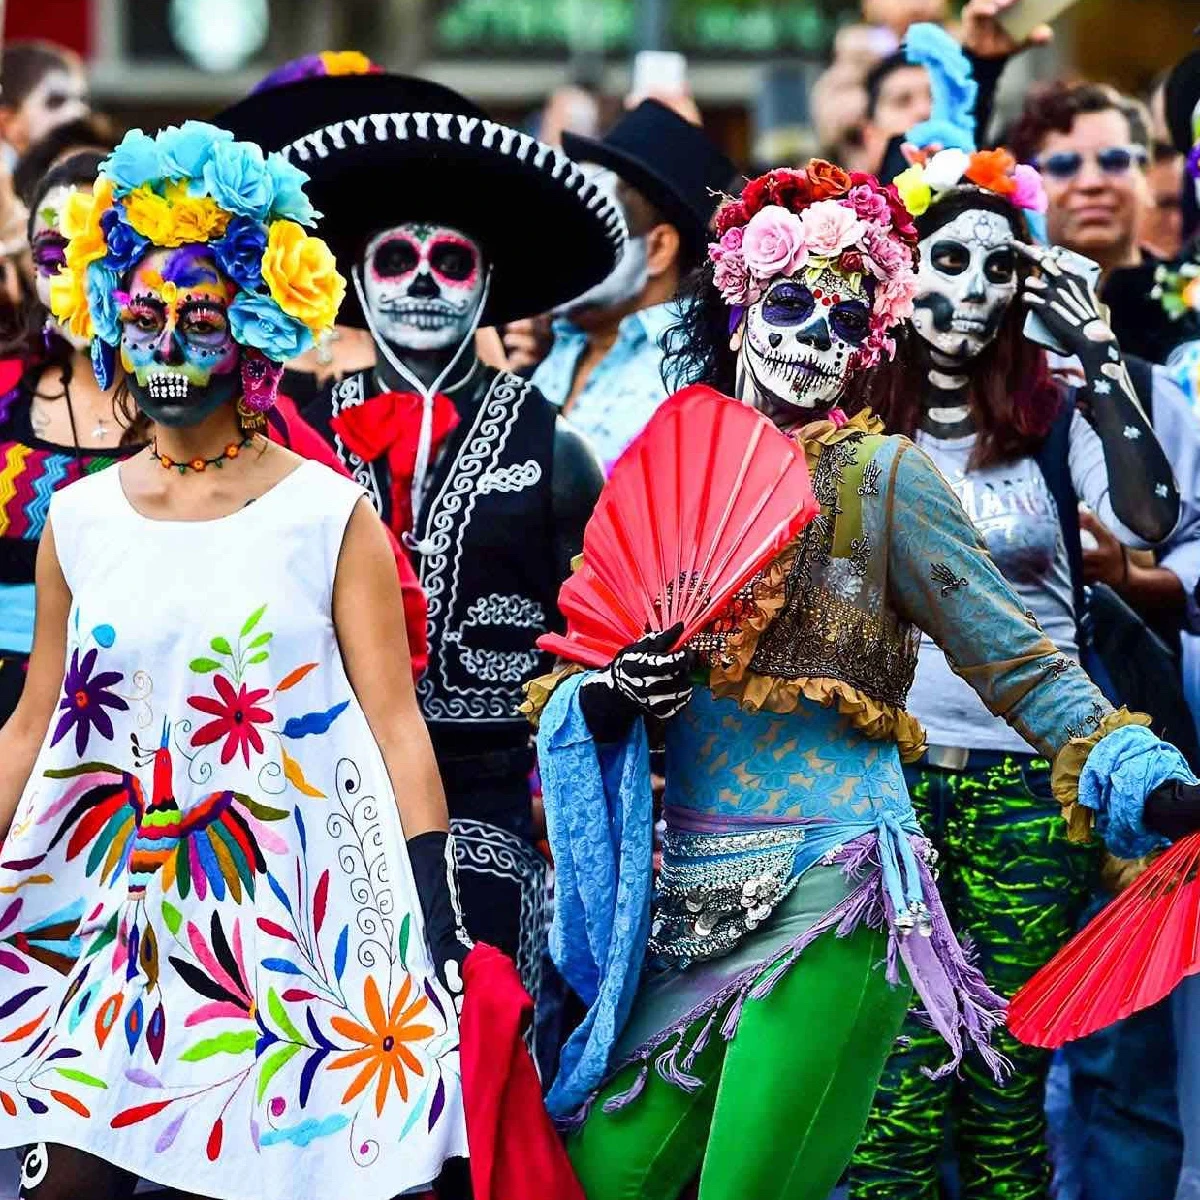 Le migliori feste primaverili del mondo Carnevale messicano - Messico